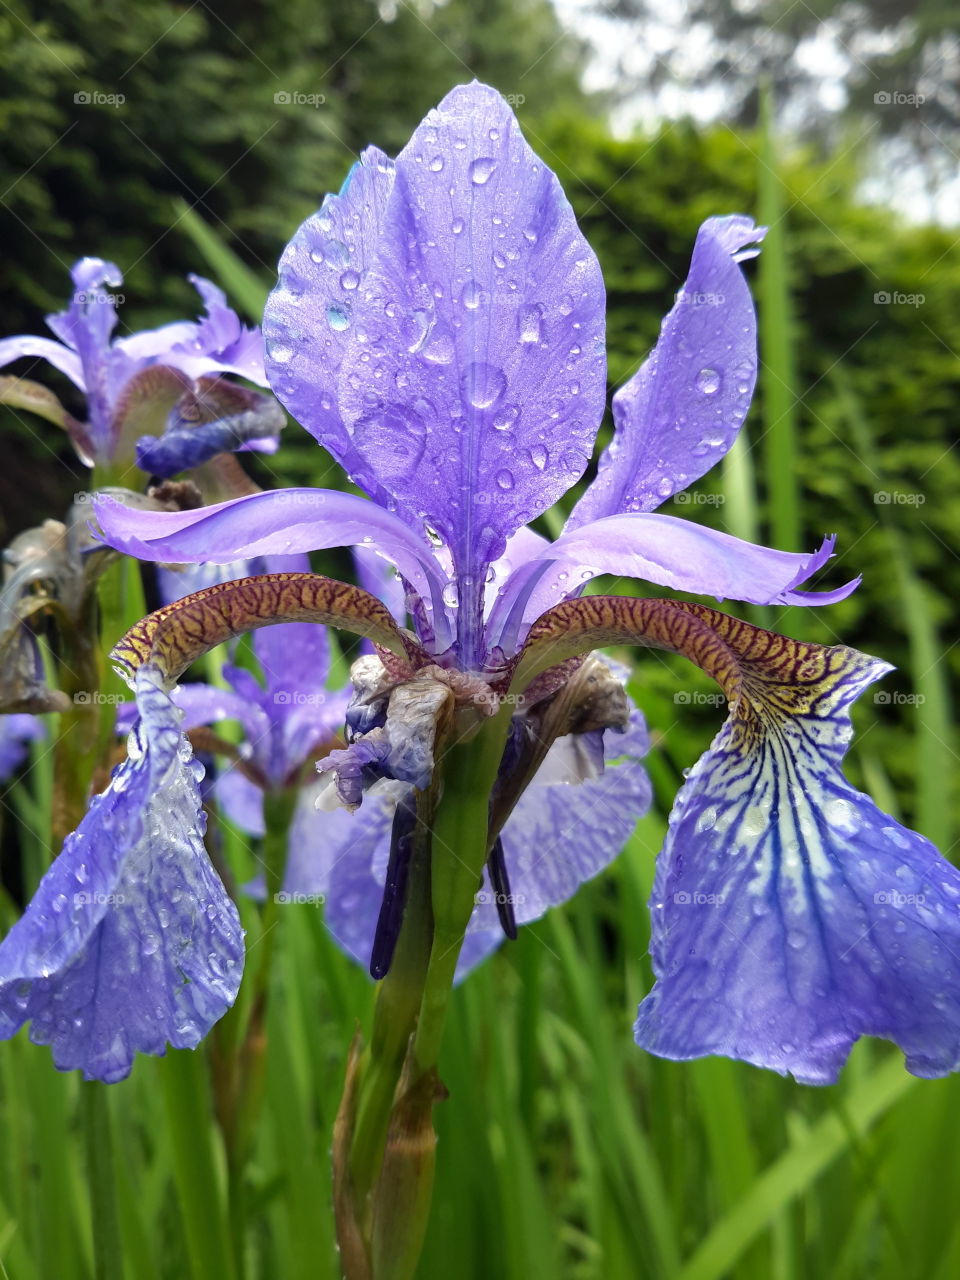 Violet flower in drops